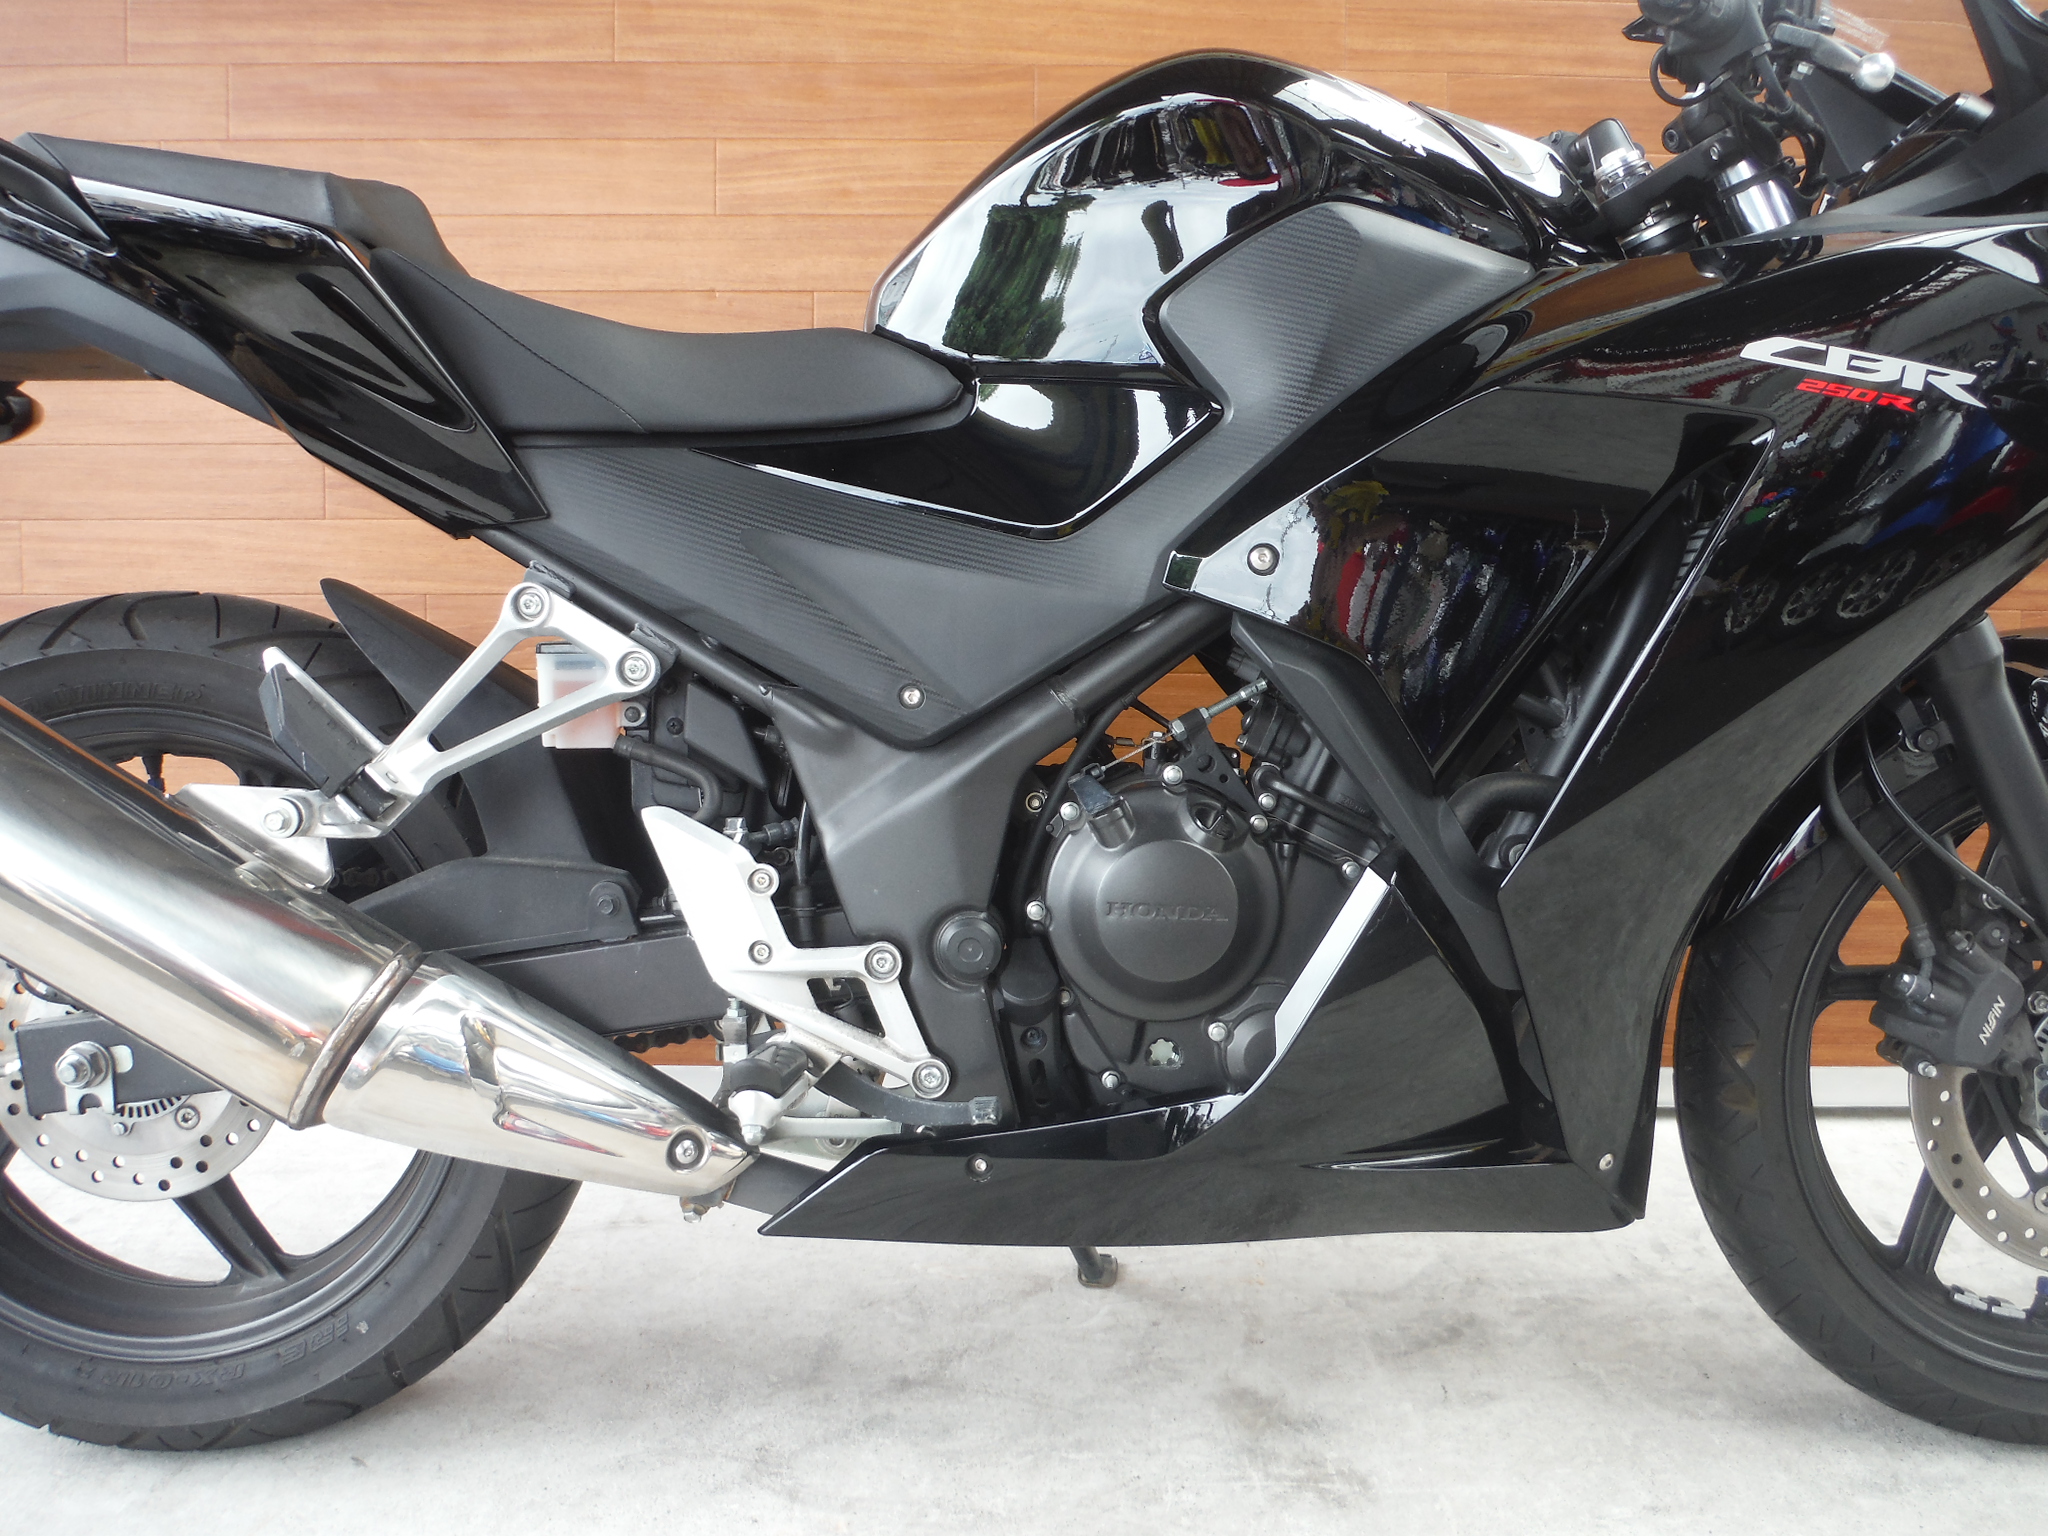 熊本中古車バイク情報 ホンダ Cbr250r Abs 250 15年モデル 黒 熊本のバイクショップ アール バイクの新車 中古車販売や買取 レンタルバイクのことならおまかせください